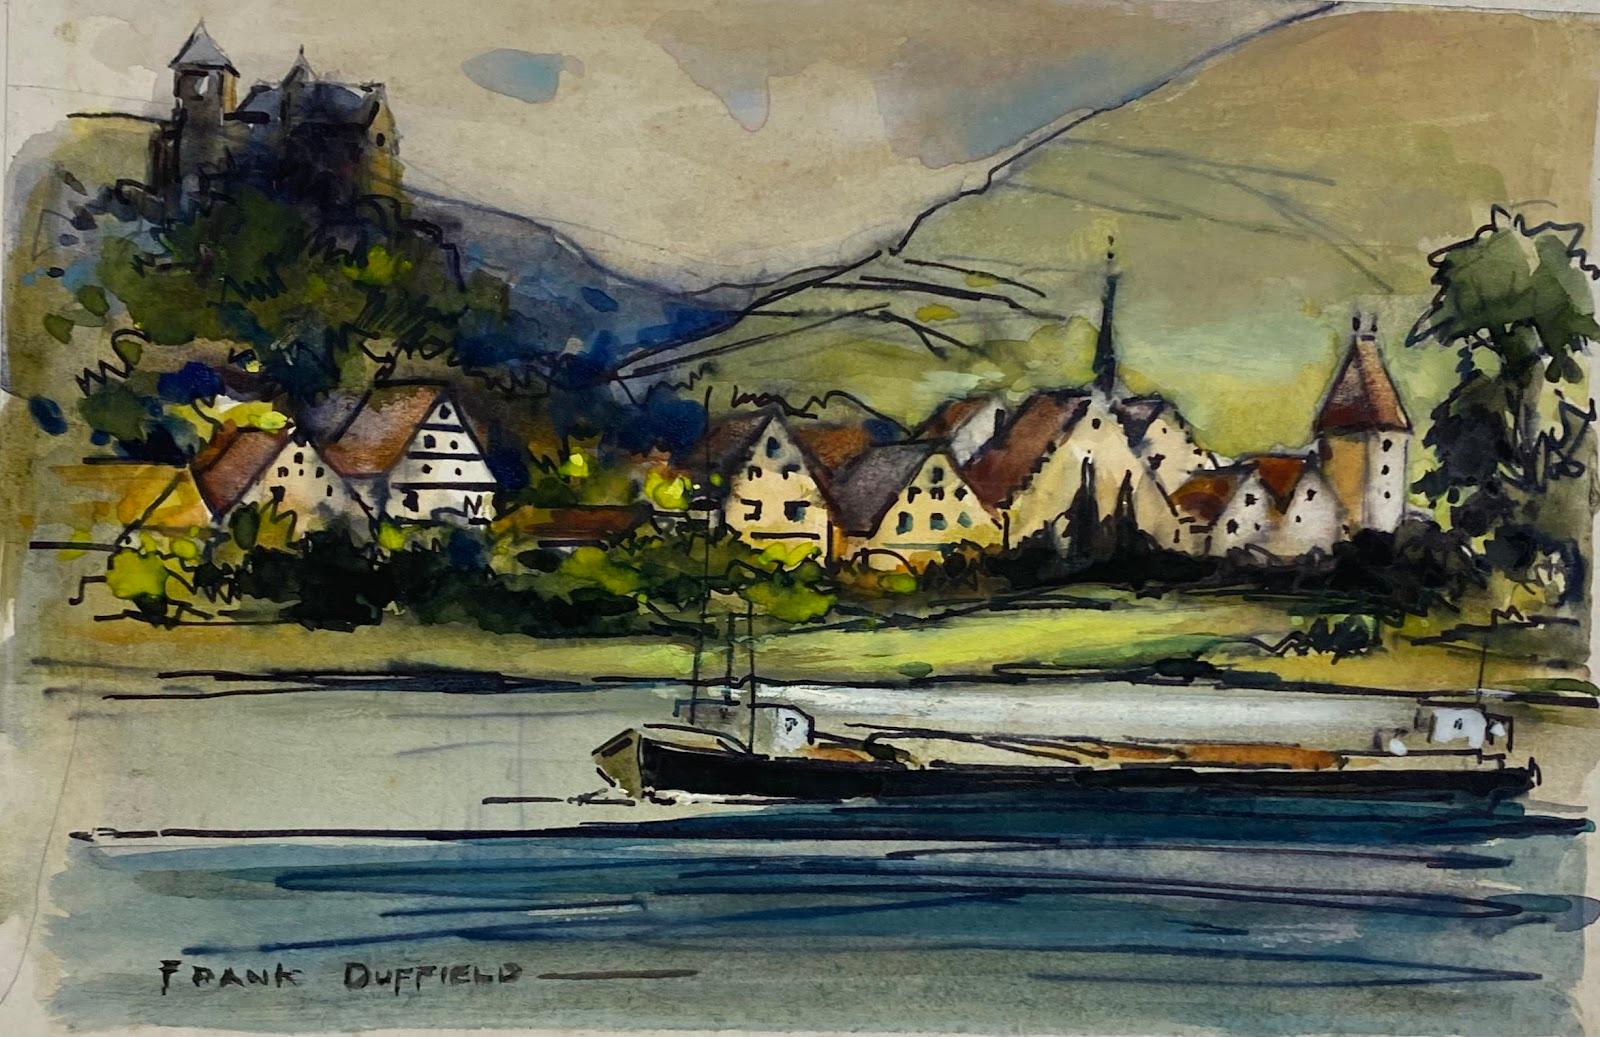 Frank Duffield Abstract Drawing – Impressionistische britische Dorf- und Kanalszene aus der Mitte des 20. Jahrhunderts 